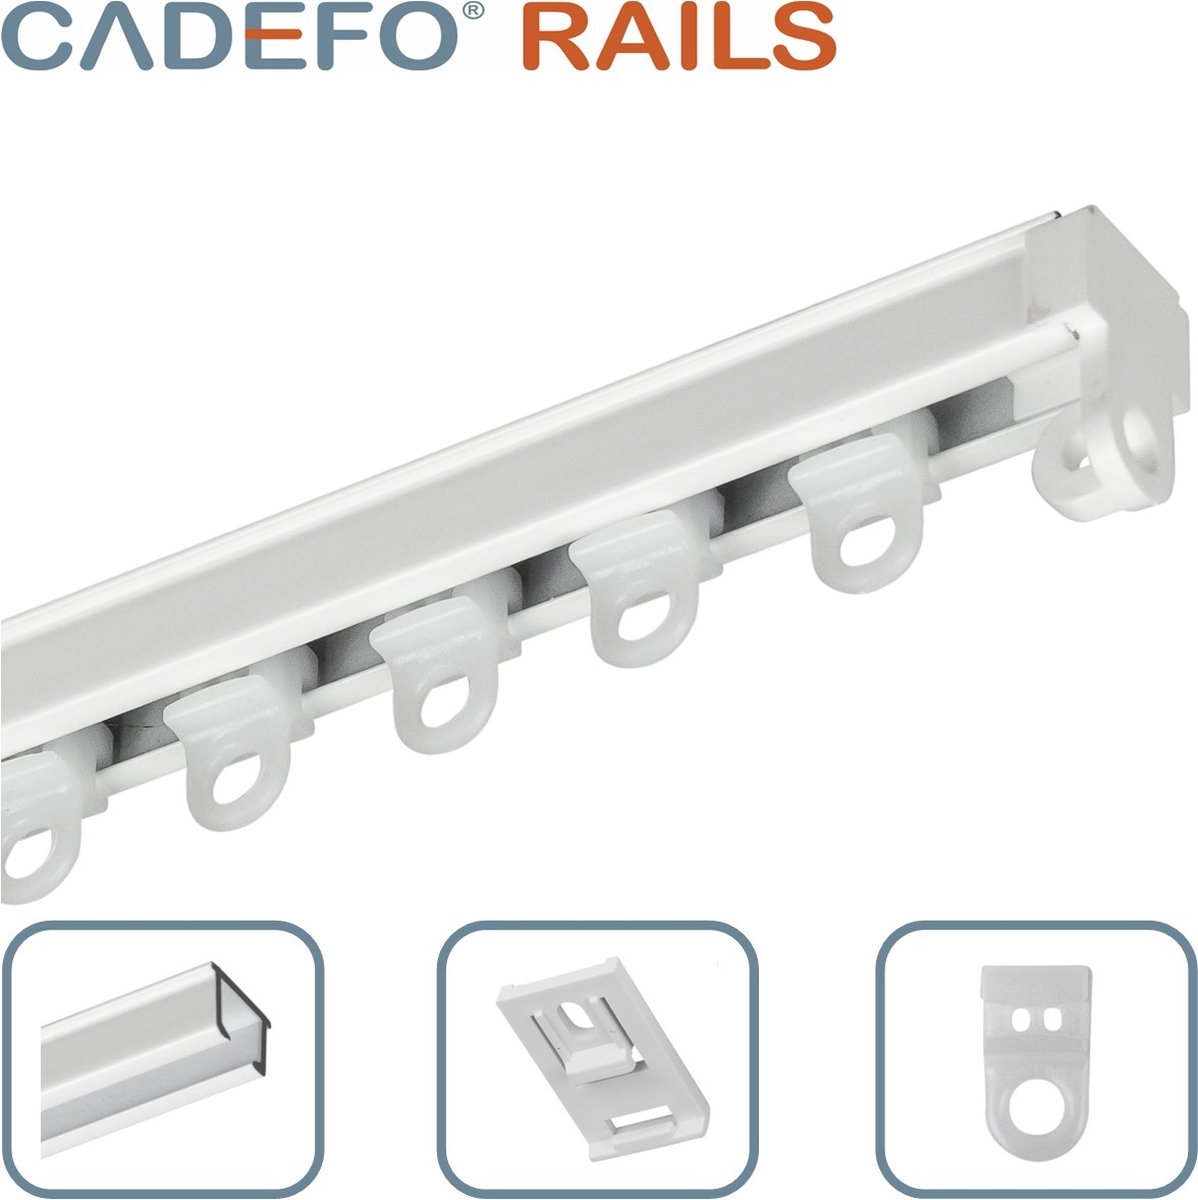 CADEFO RAILS (251 - 300 cm) Gordijnrails - Compleet op maat! - UIT 1 STUK - Leverbaar tot 6 meter - Plafondbevestiging - Lengte 274 cm